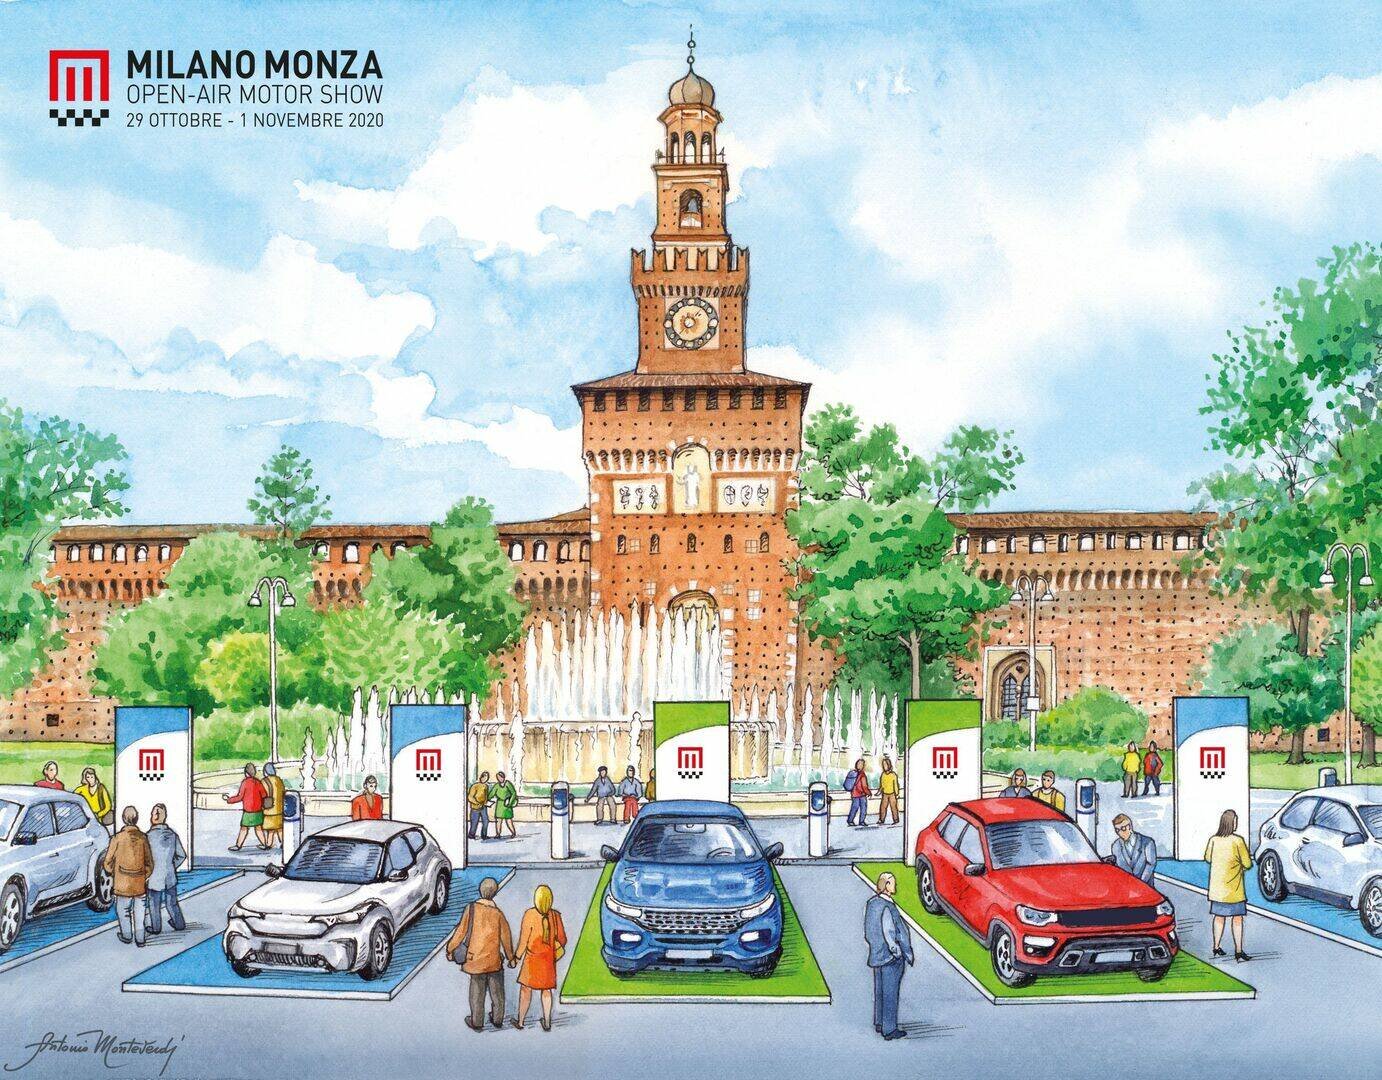 Immagine di Tornano gli eventi in presenza: confermato Milano Monza Motor Show 2021